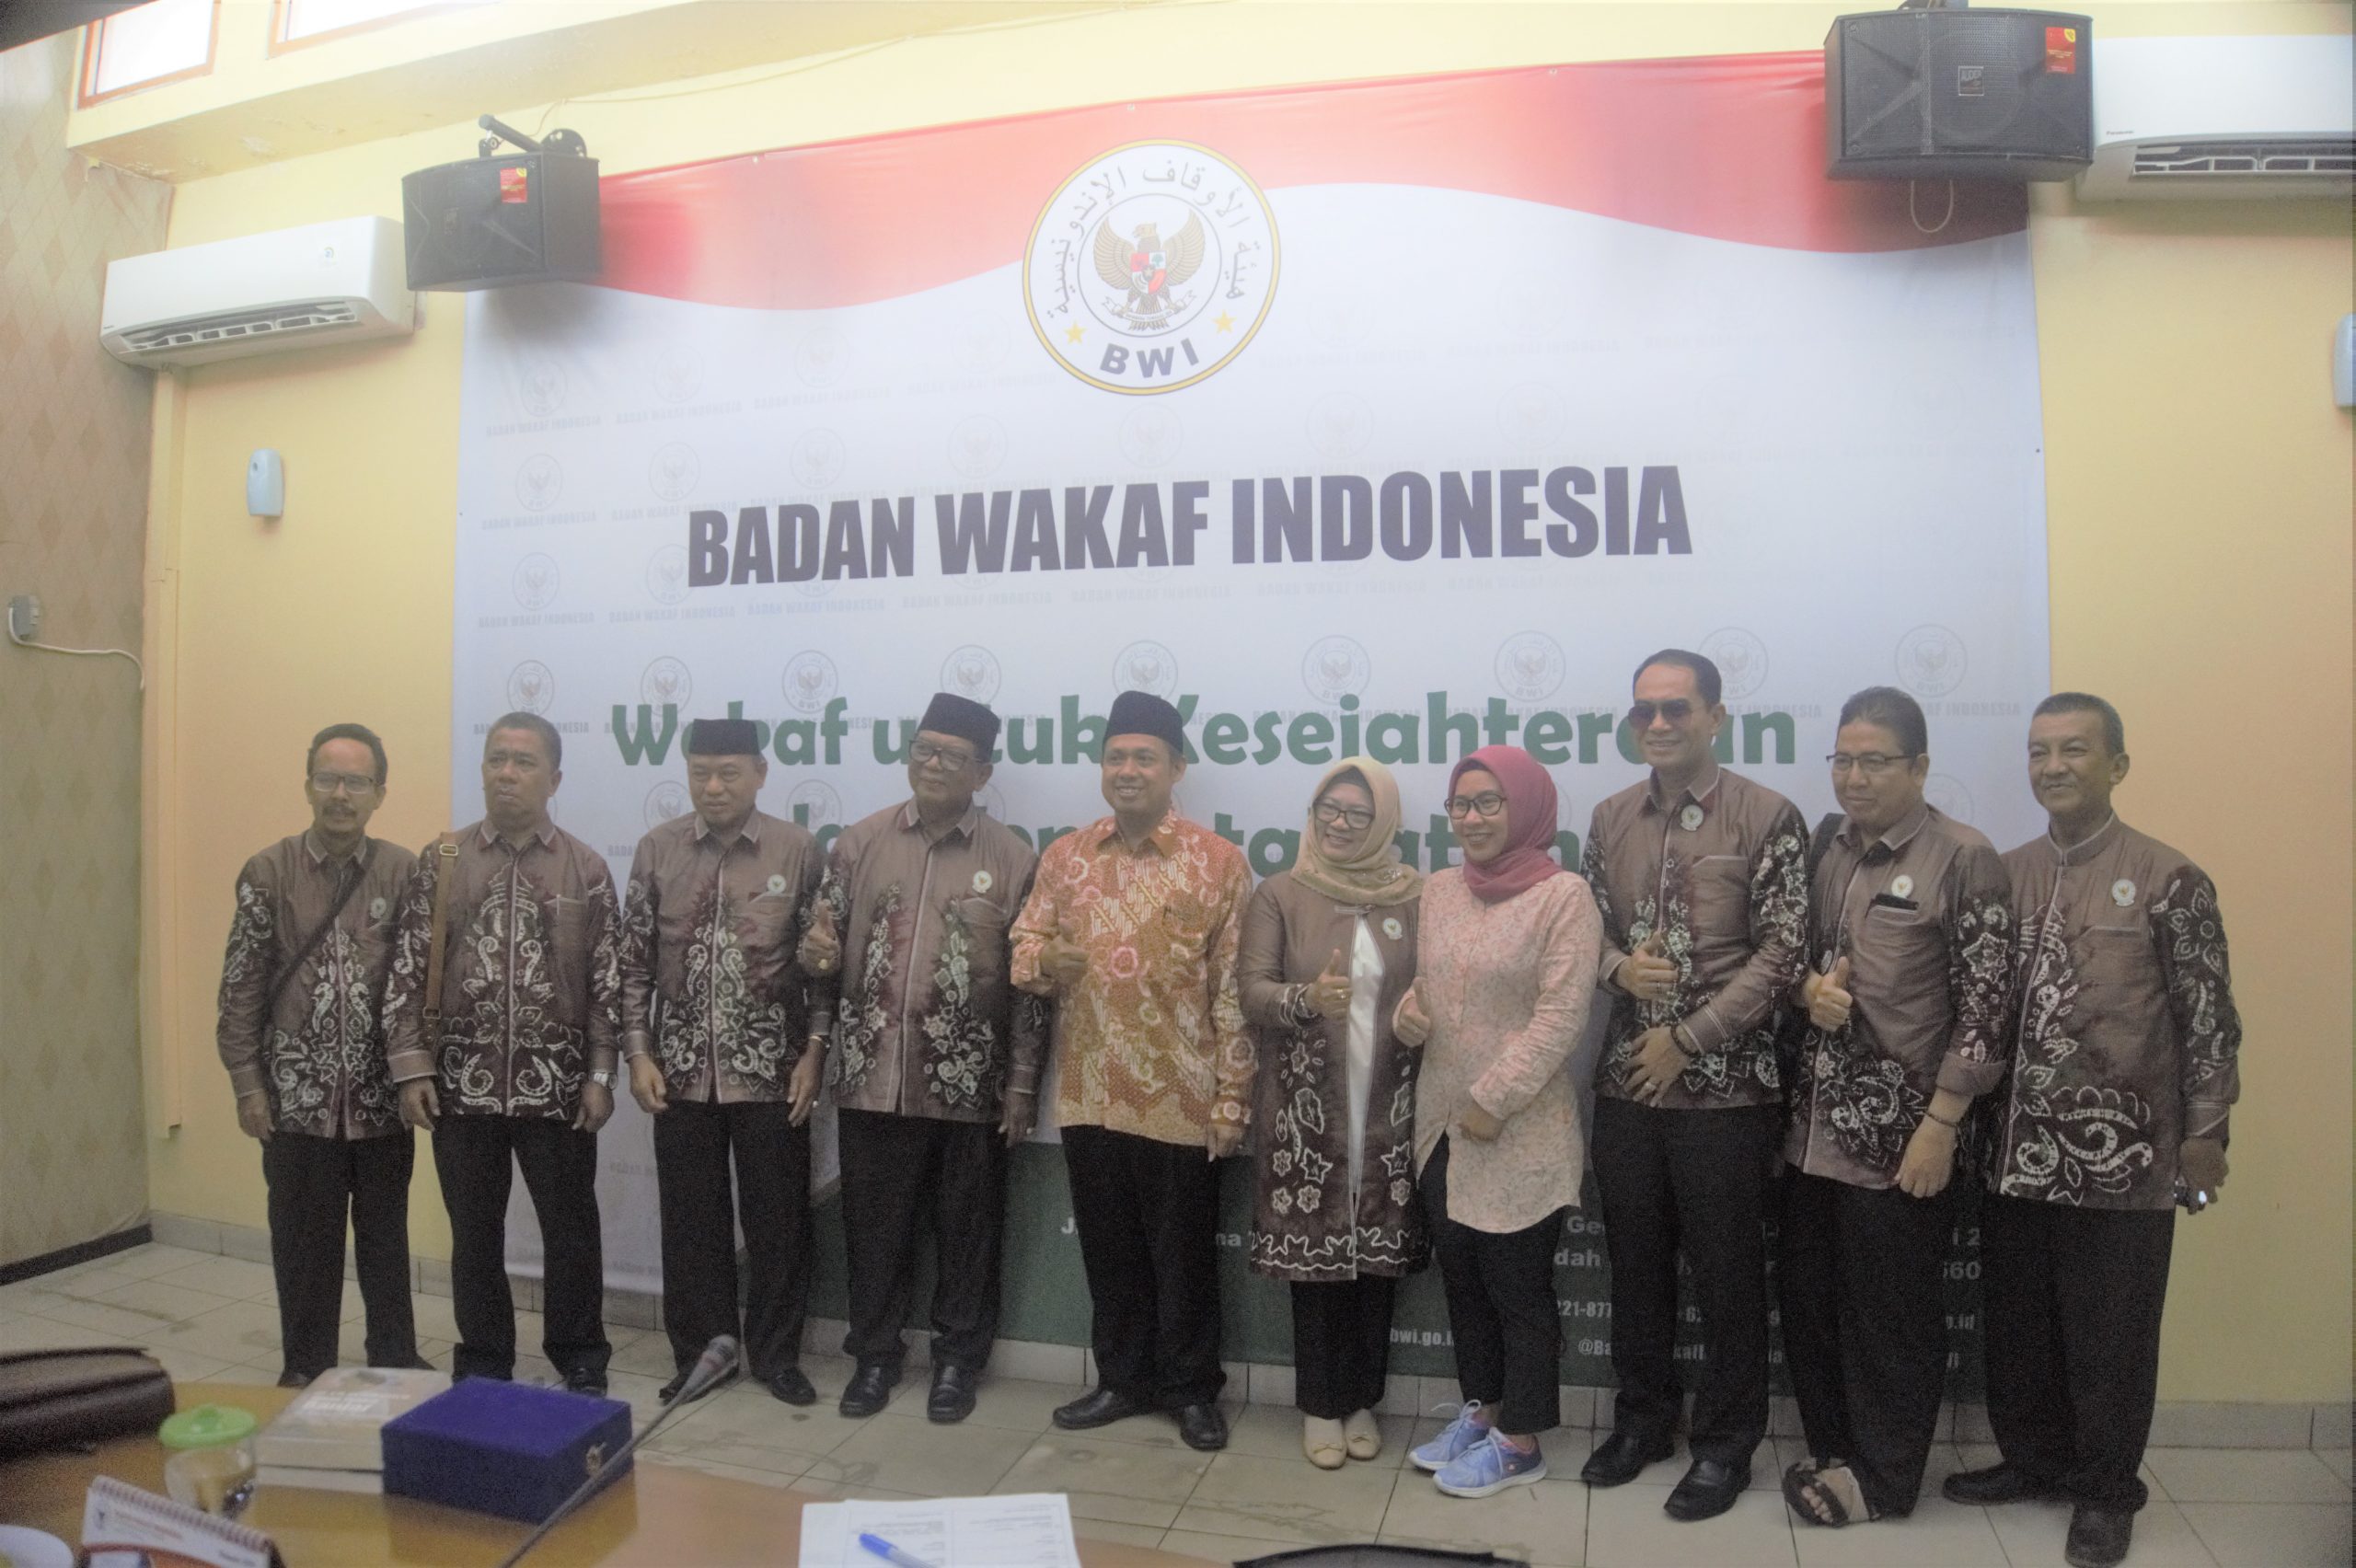 Silaturahmi dengan Badan Wakaf Indonesia, Pengurus Daerah Kalimantan Selatan Minta Masukan